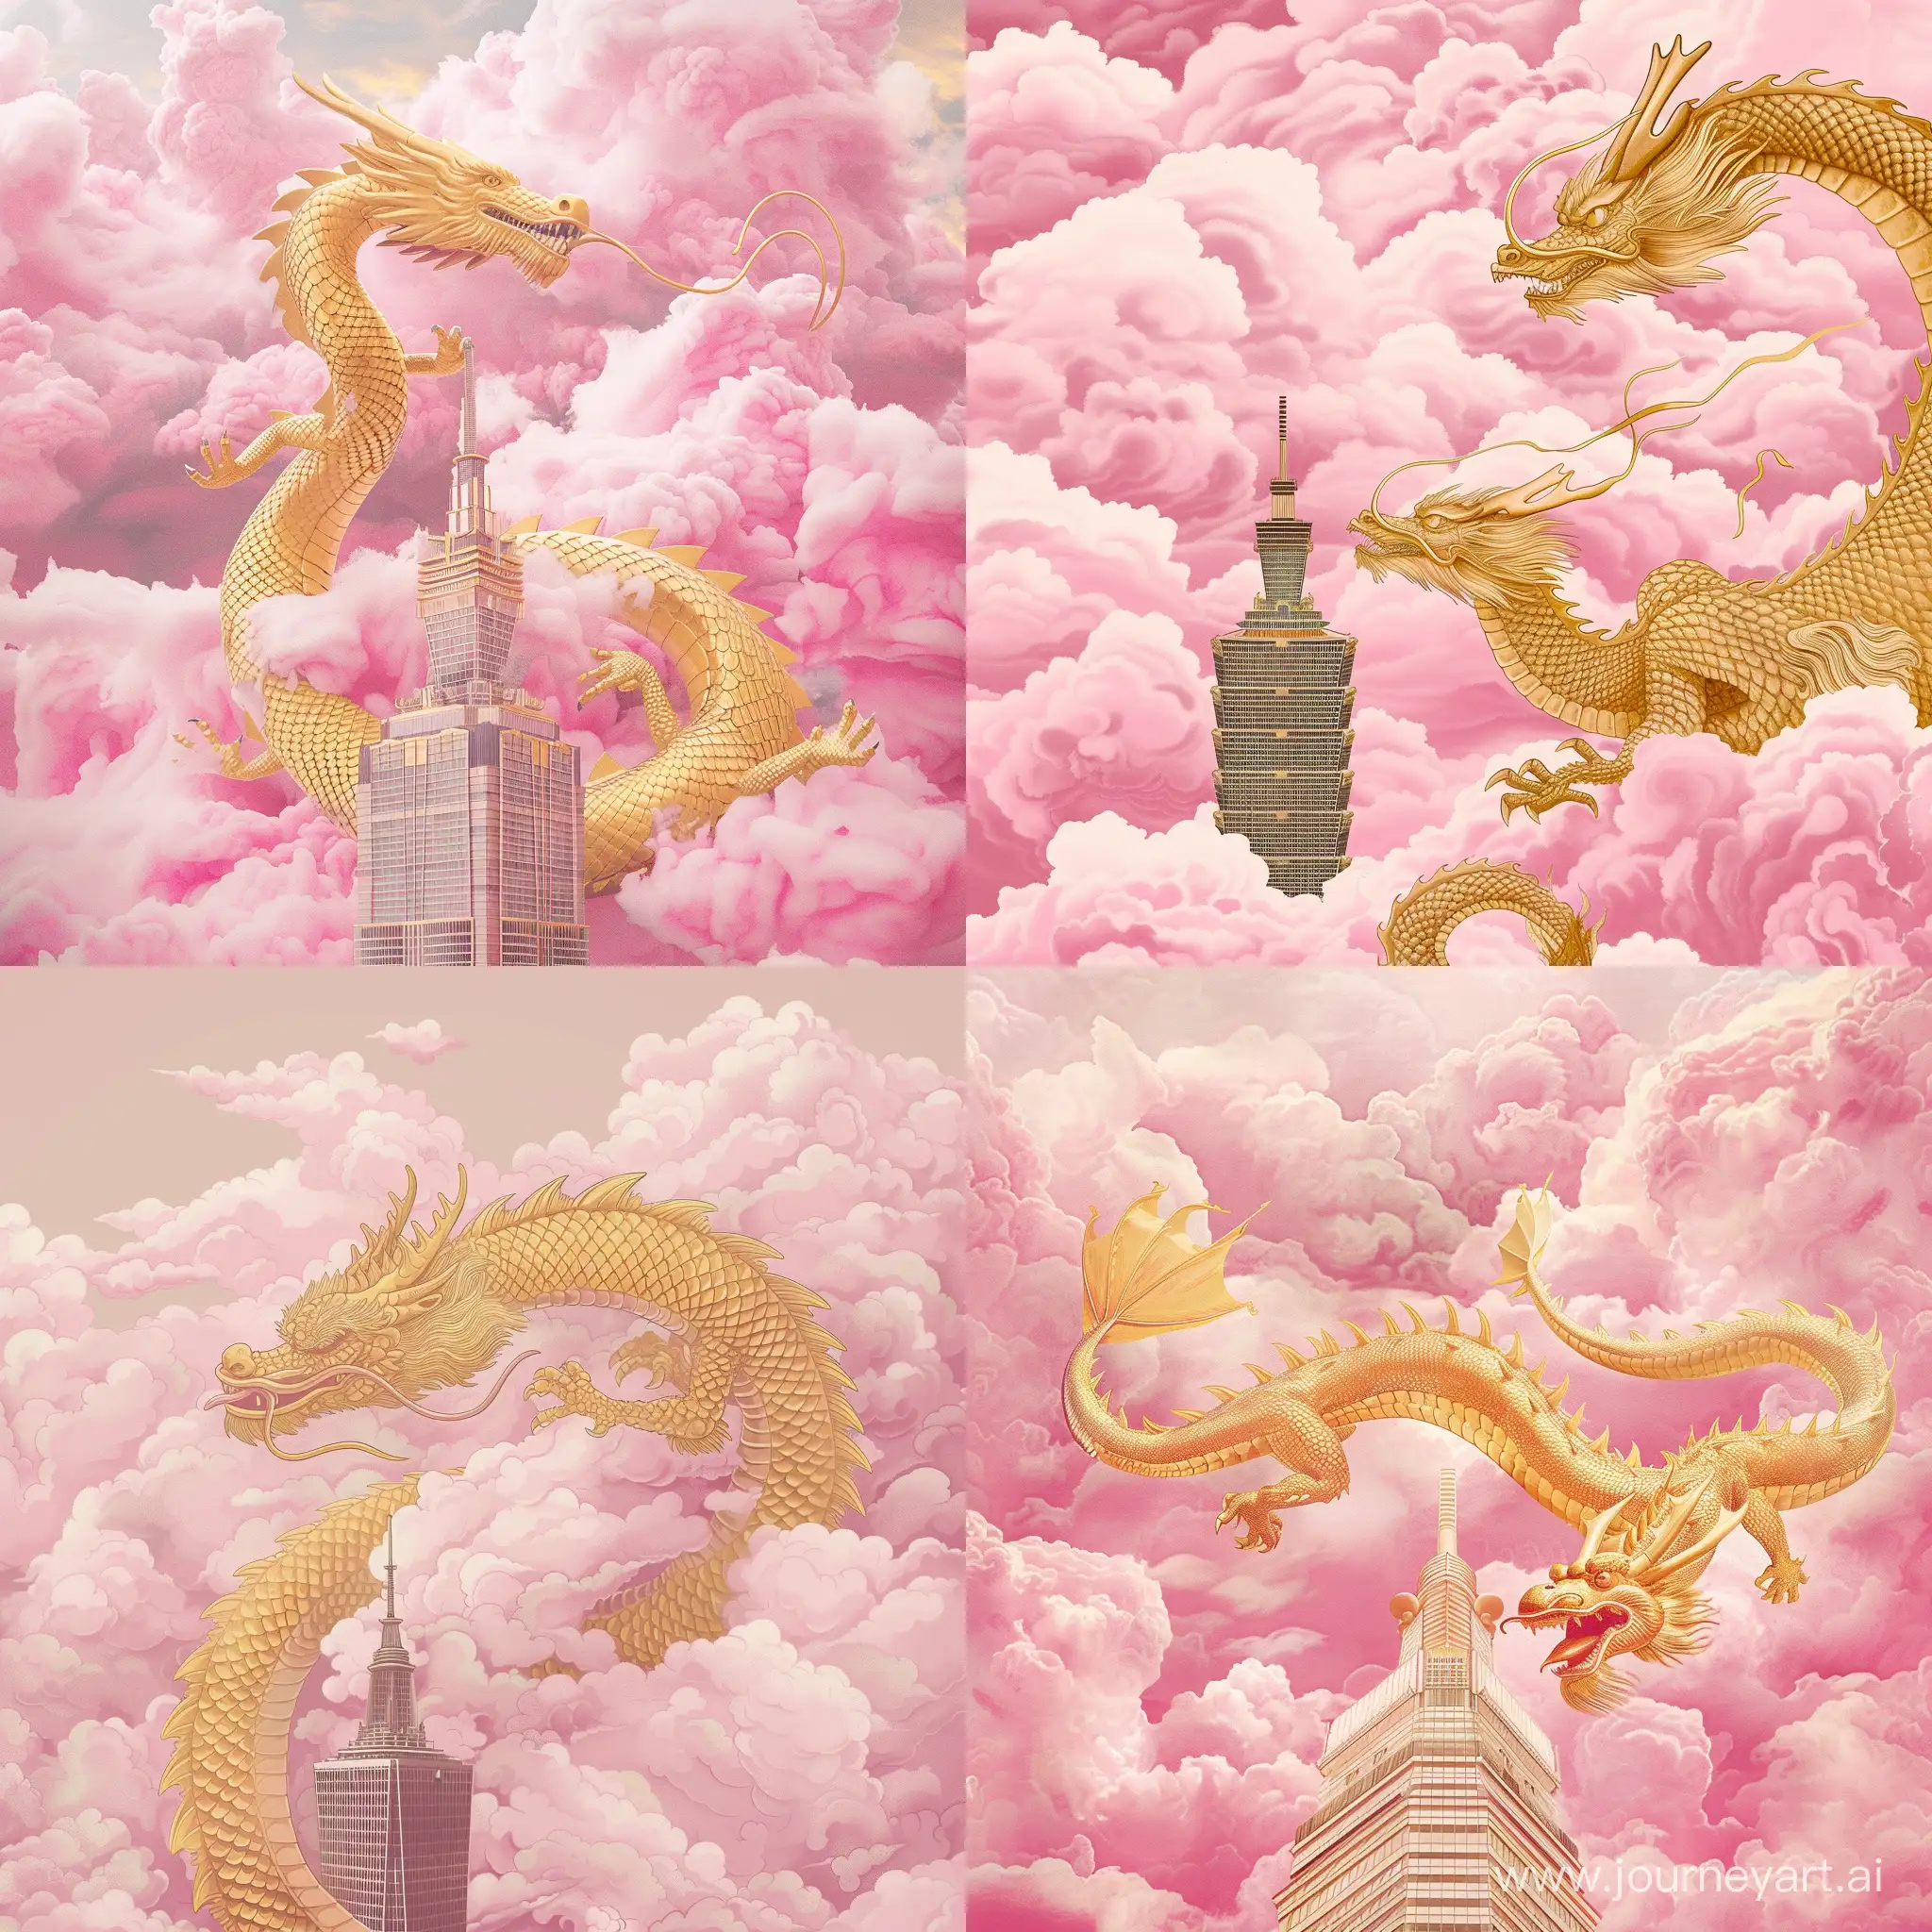 一条金色的龙飞在粉红色的云上，下面一角露出摩天大楼的顶部